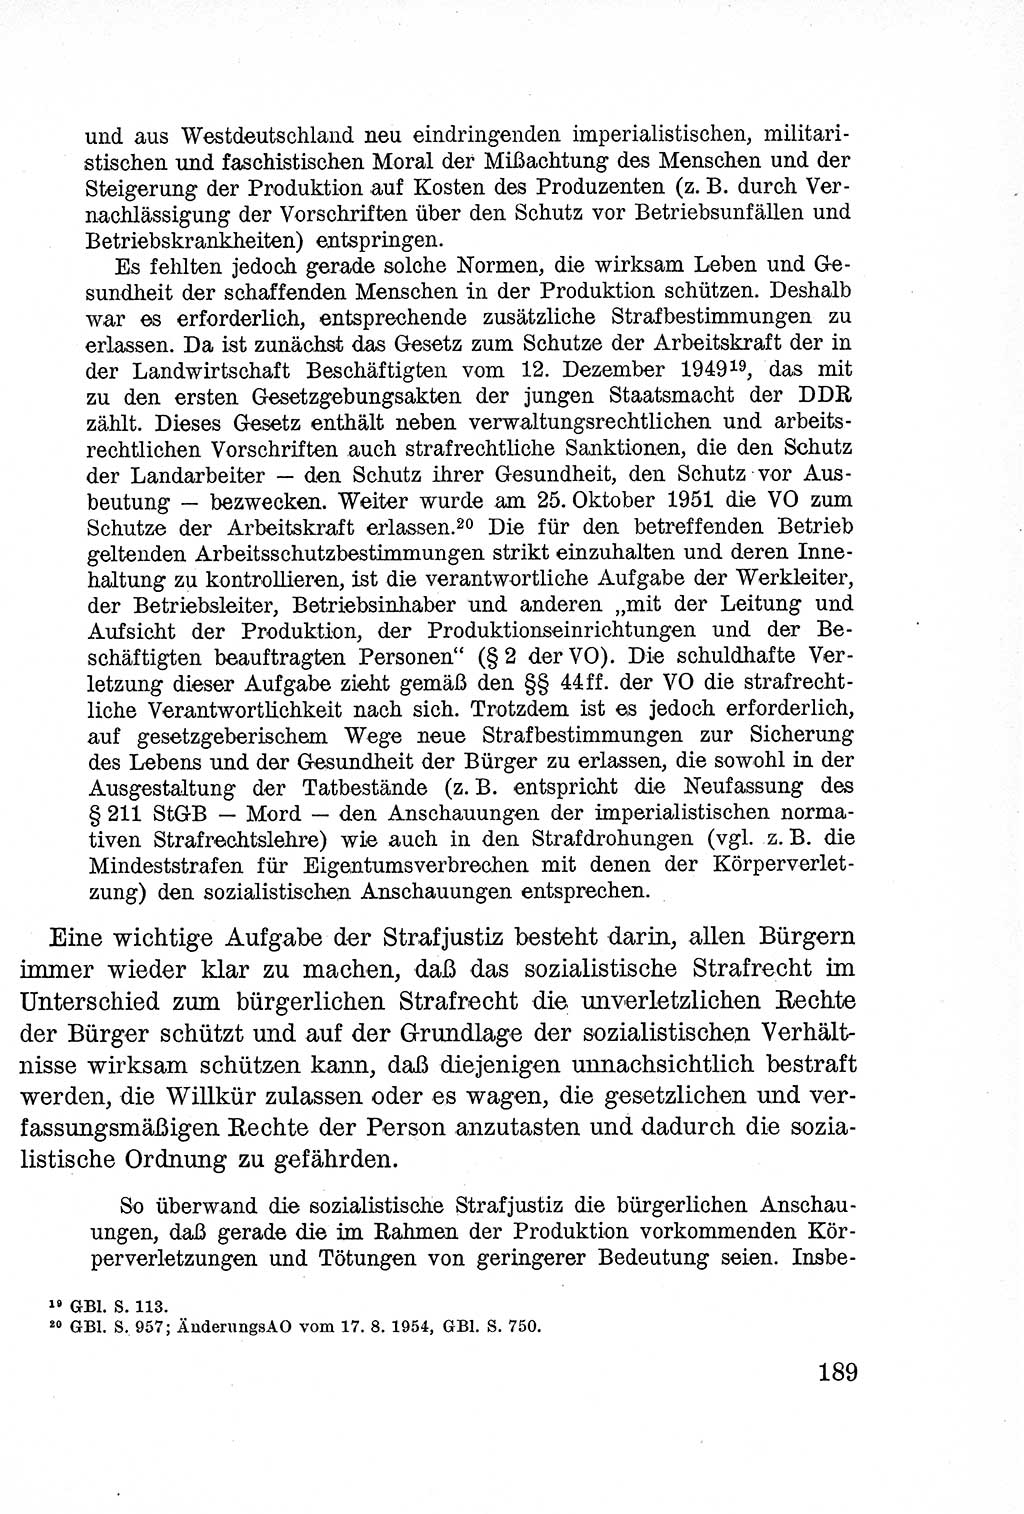 Lehrbuch des Strafrechts der Deutschen Demokratischen Republik (DDR), Allgemeiner Teil 1957, Seite 189 (Lb. Strafr. DDR AT 1957, S. 189)